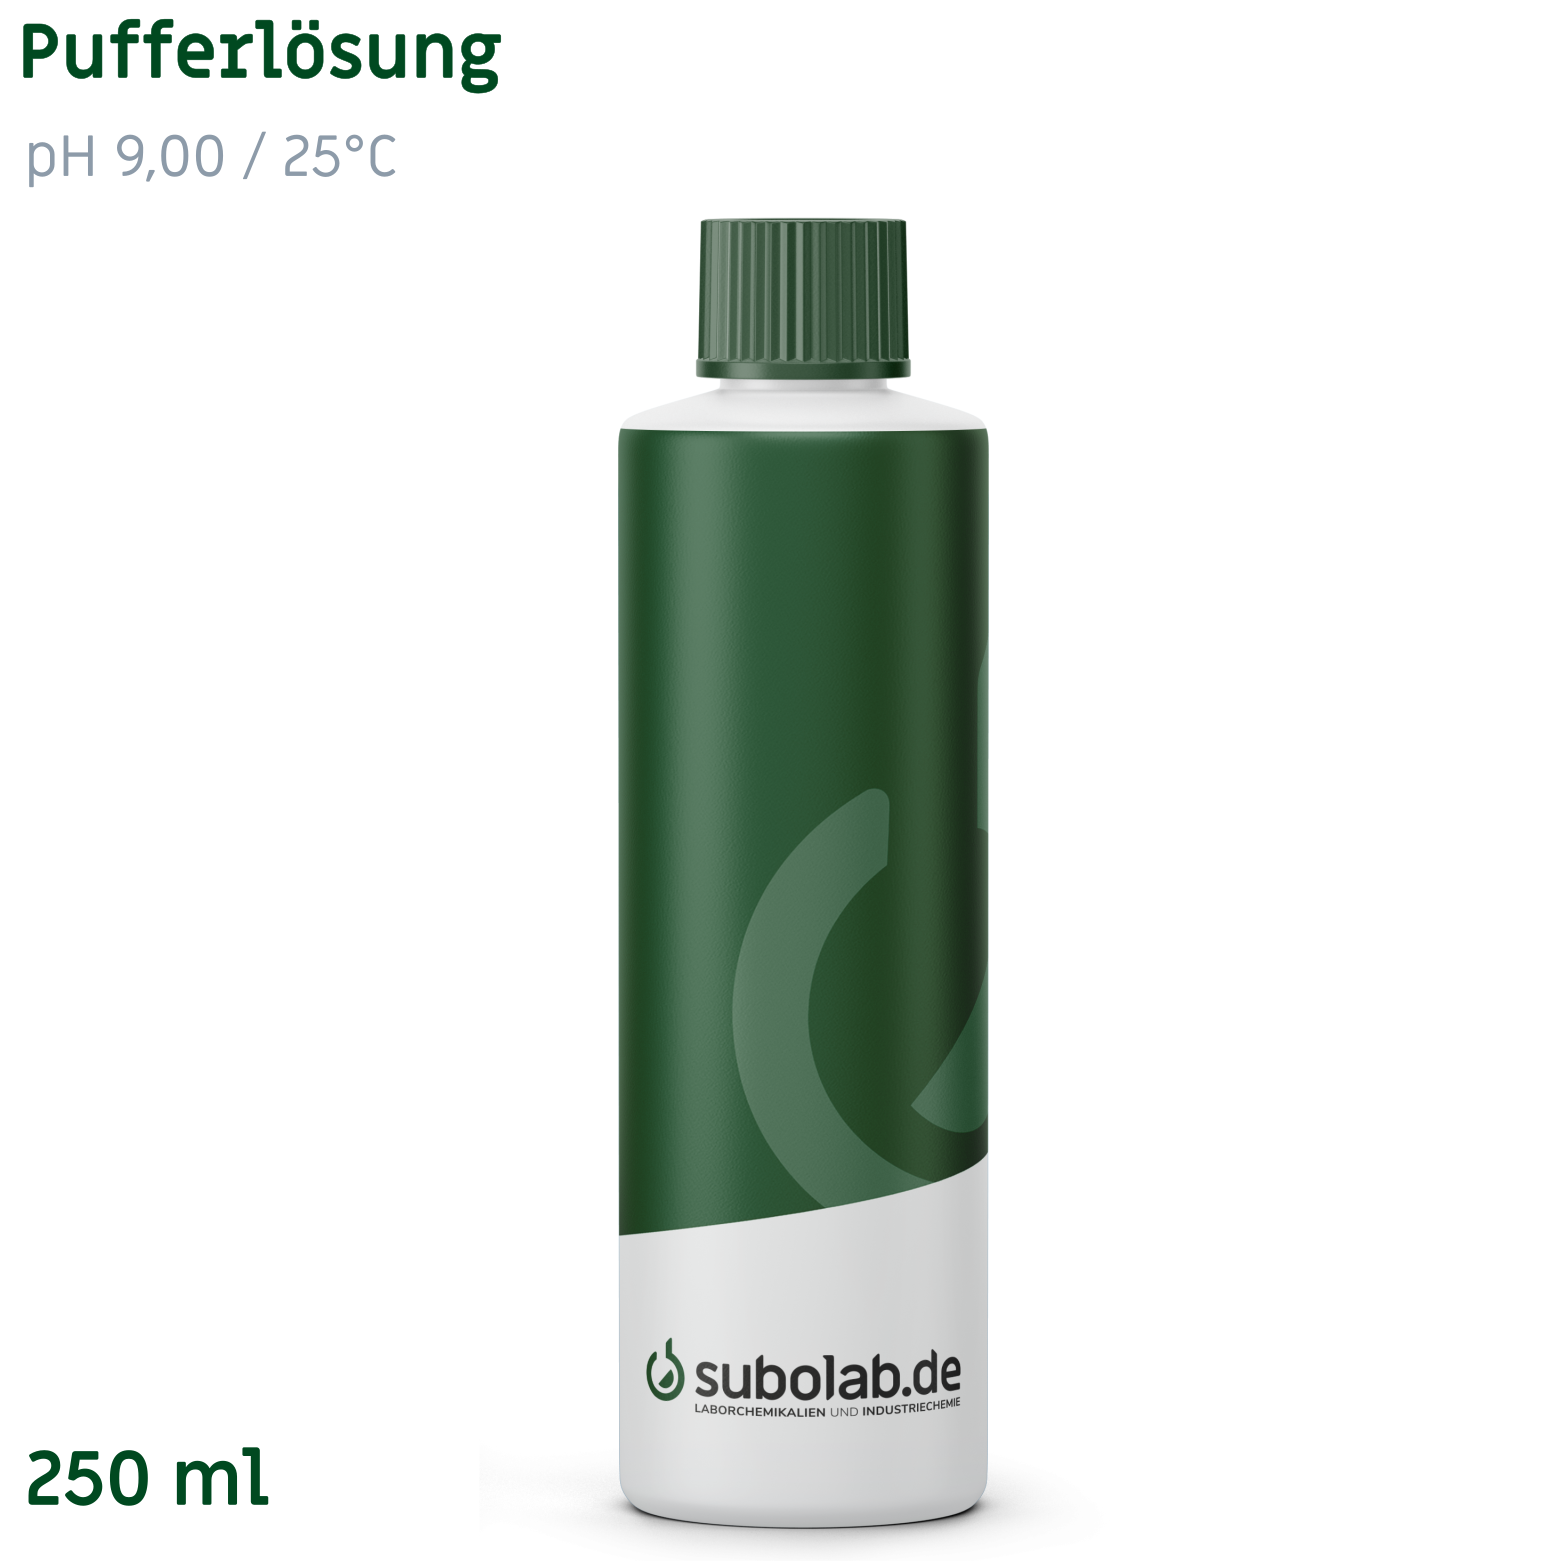 Bild von Pufferlösung pH 9,00 / 25°C (Borsäure, Kaliumchlorid, Natronlauge) (250 ml)